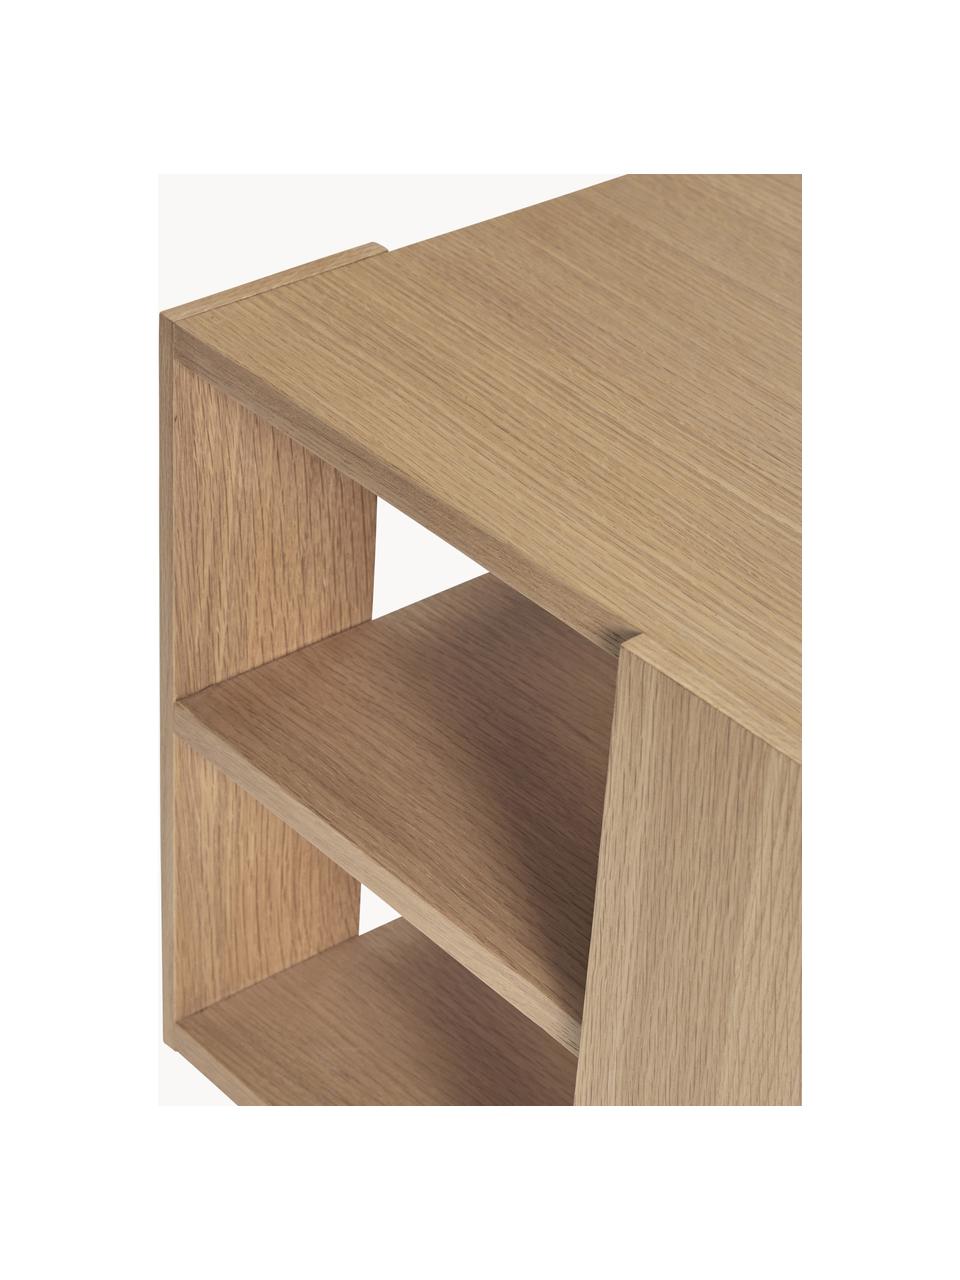 Dřevěný odkládací stolek Merge, Dubové dřevo

Tento produkt je vyroben z udržitelných zdrojů dřeva s certifikací FSC®., Dubové dřevo, Š 37 cm, V 38 cm